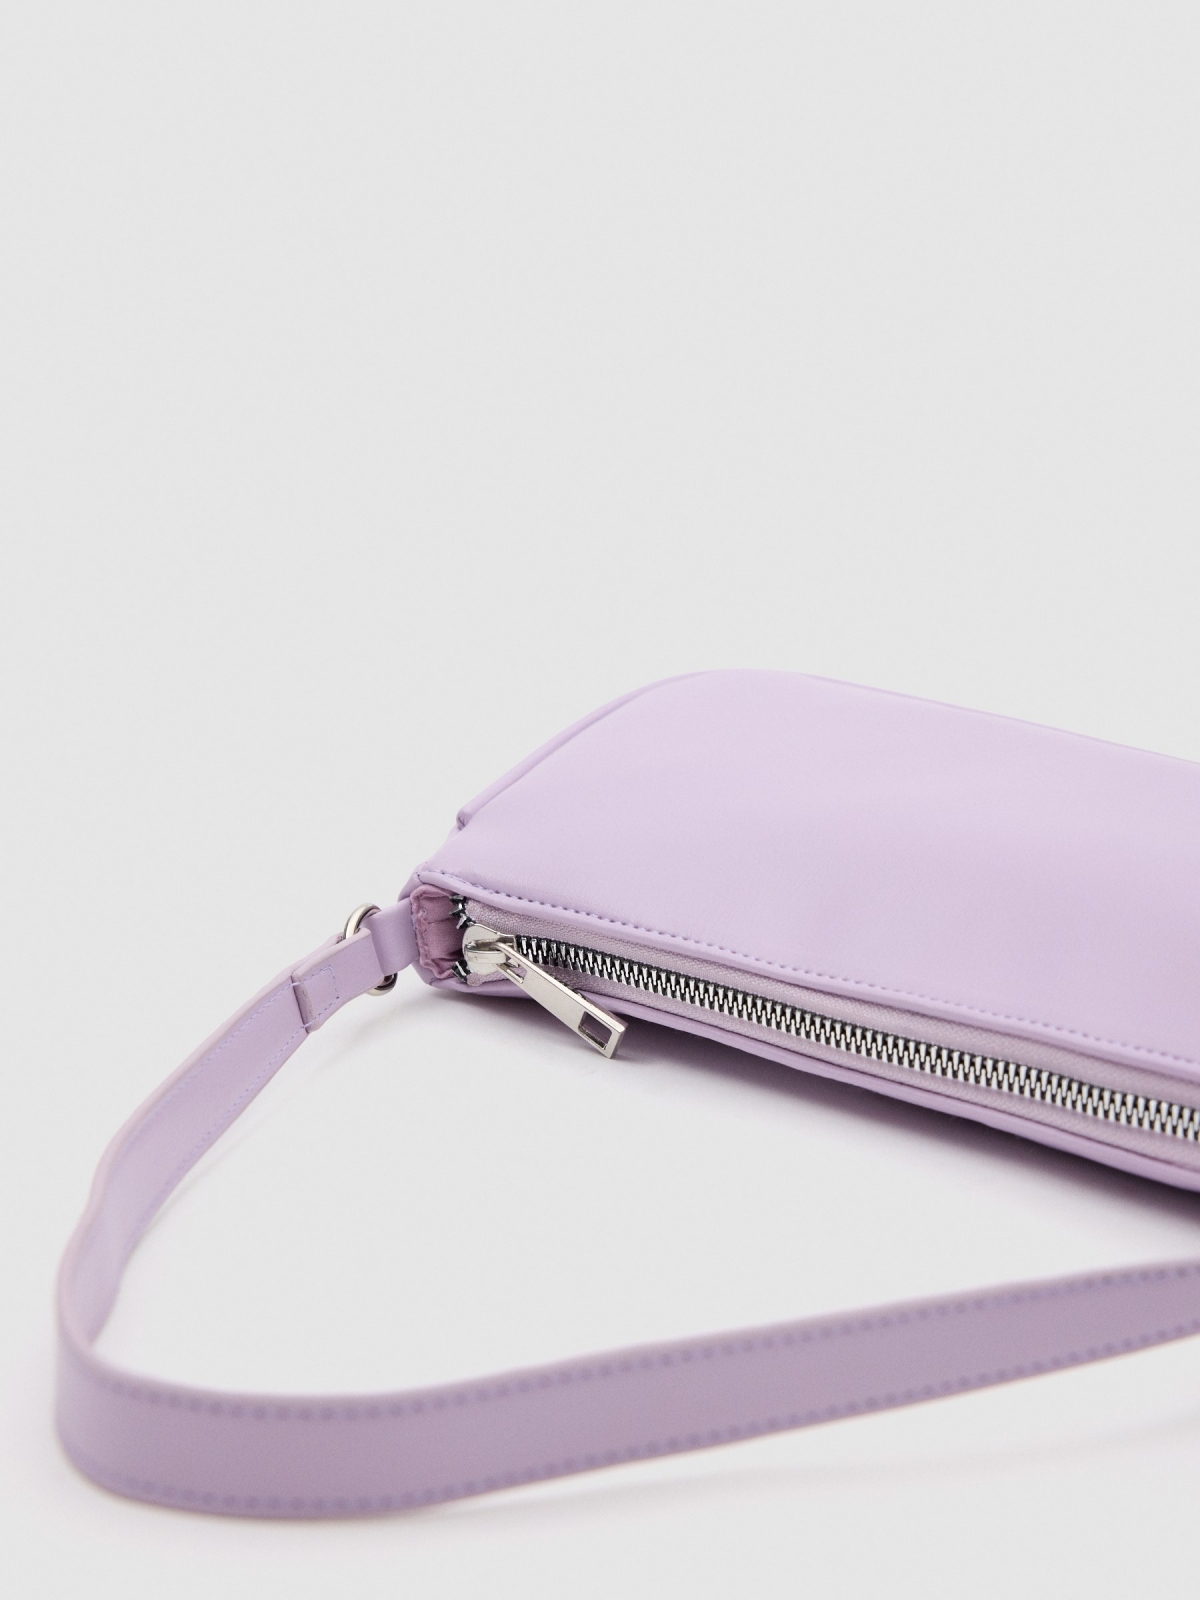 Colour gradient bag lilac detail view